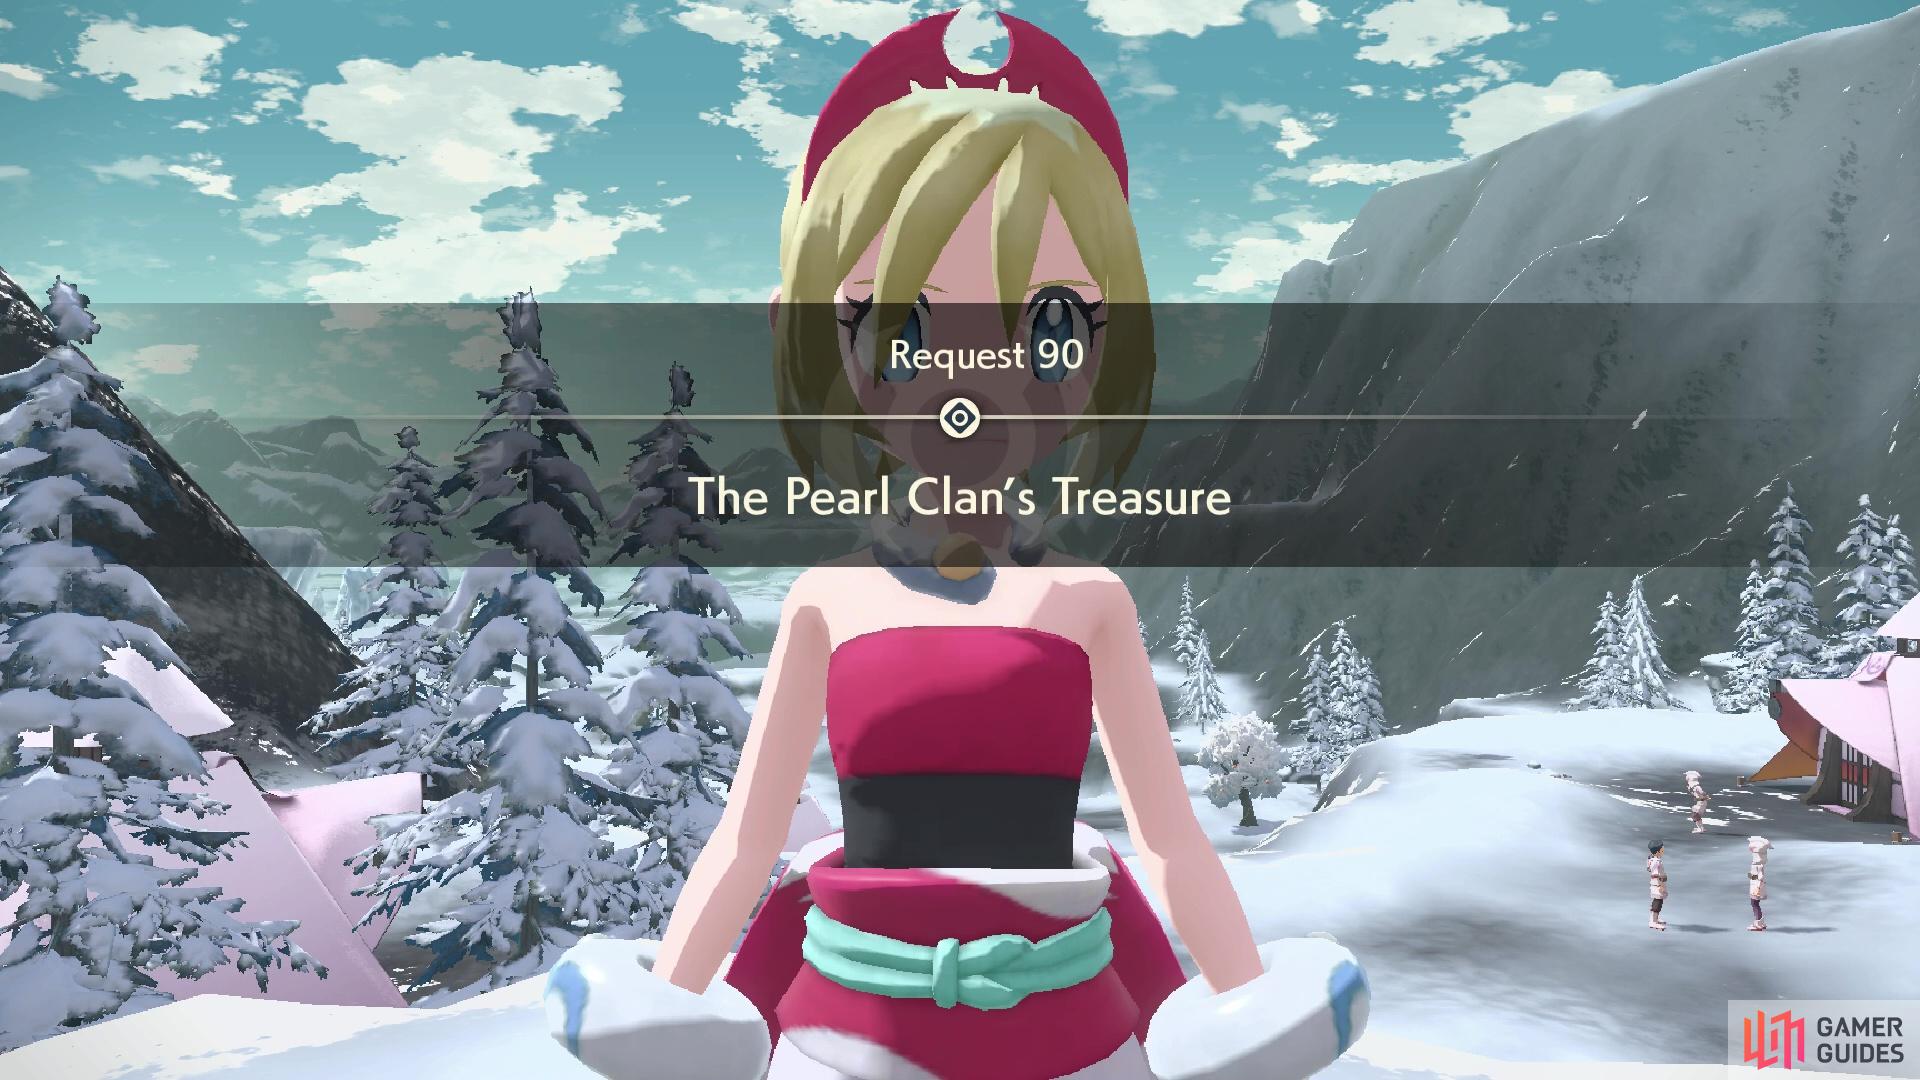 Request 90: The Pearl Clan’s Treasure.